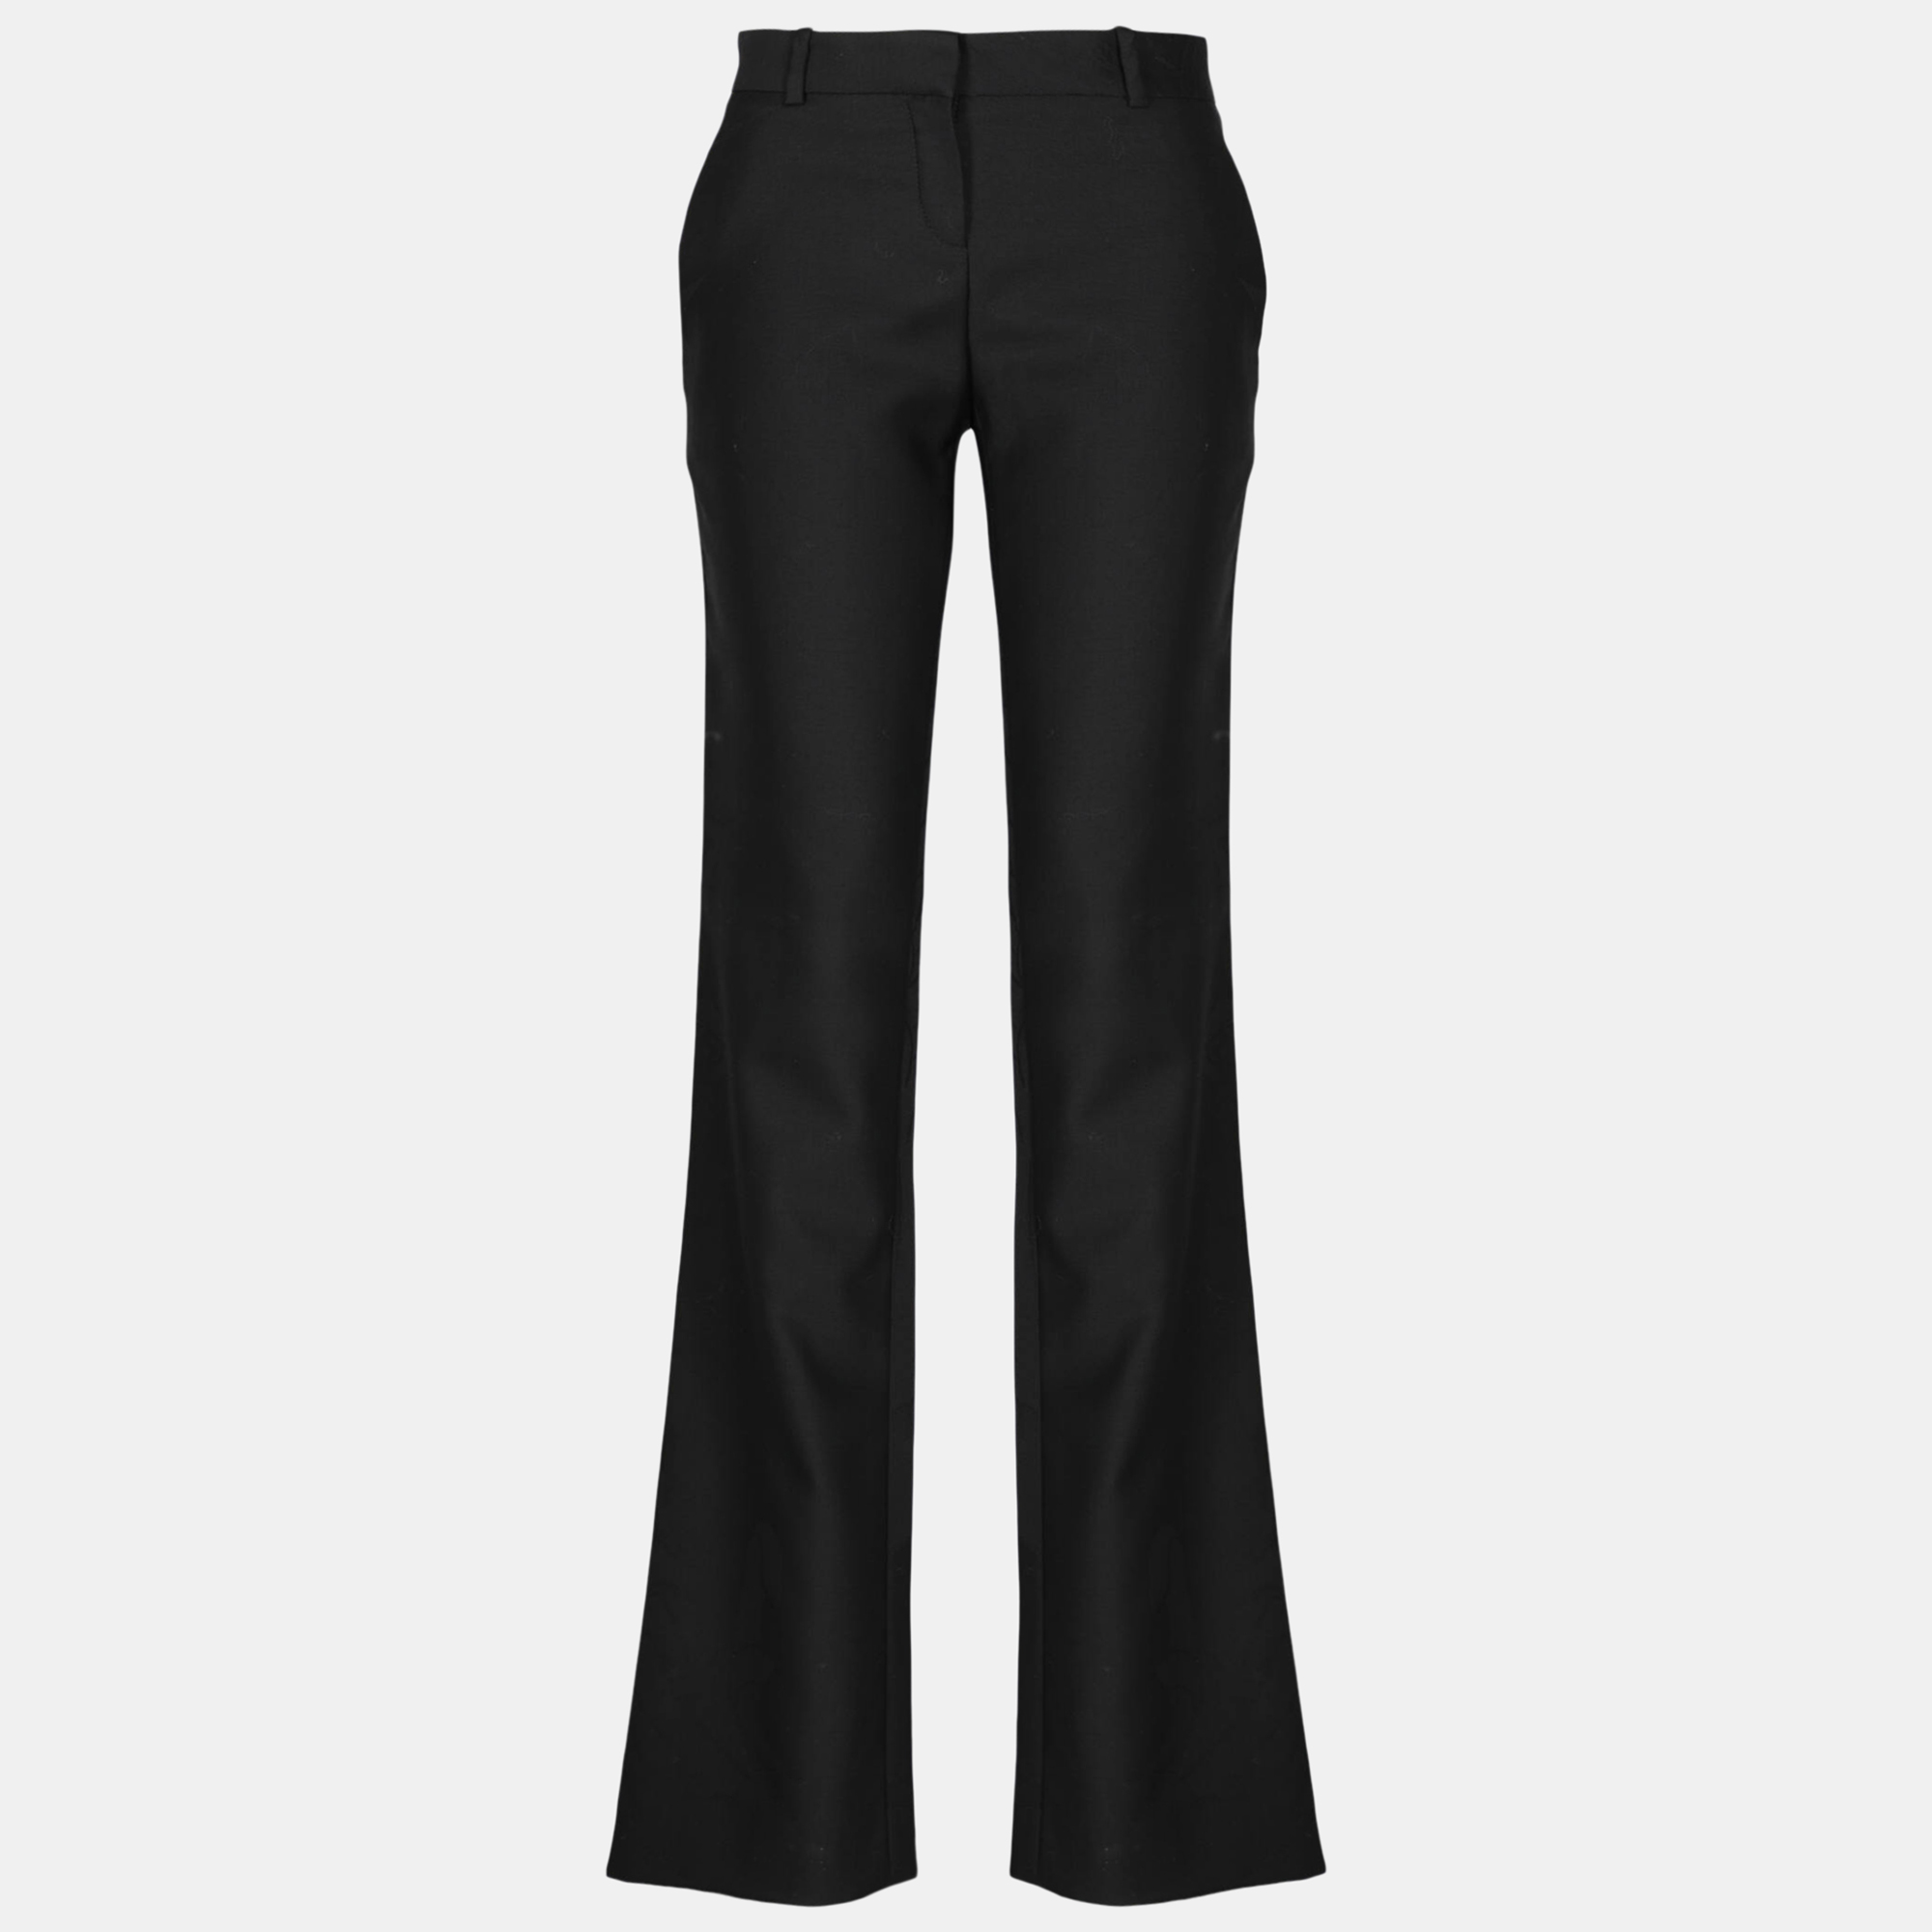 Versace  Women's Wool Trousers - Black - S